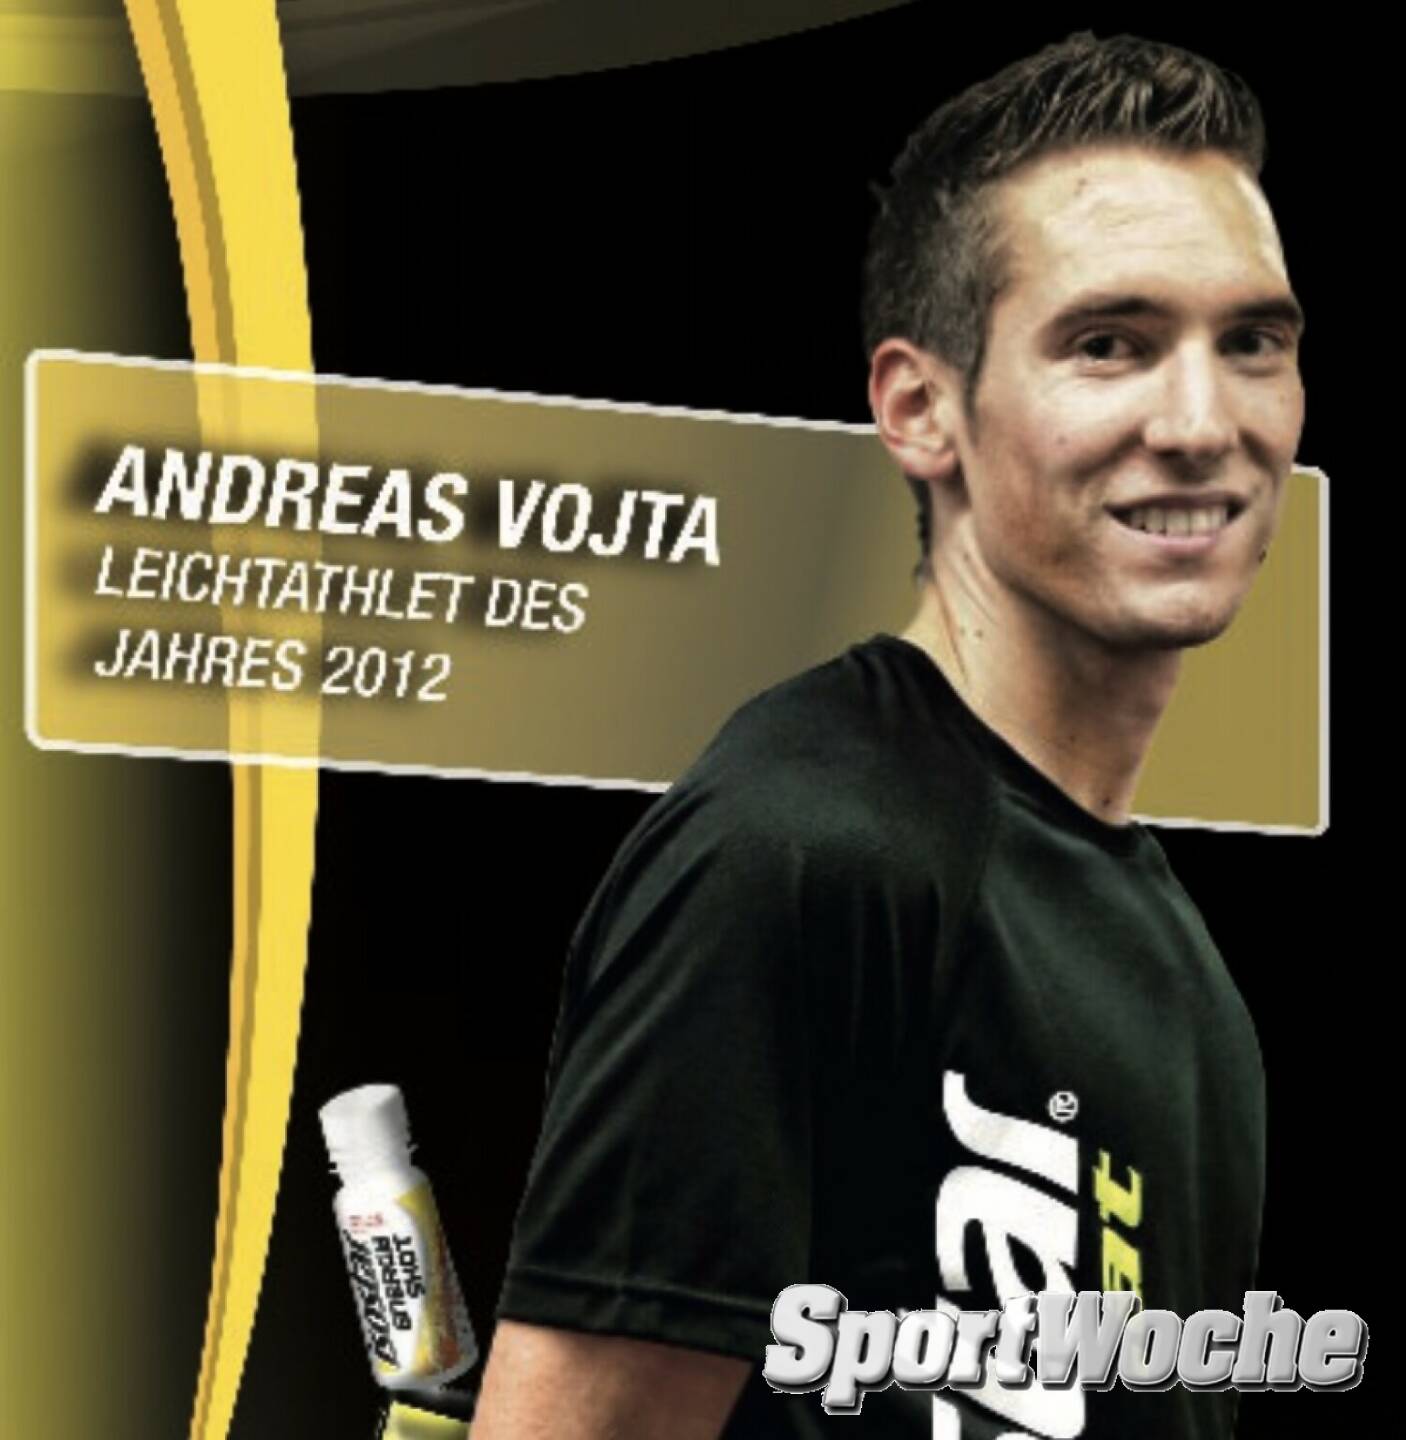 01.07.2022: Andreas Vojta: 10. Platz Leichtathletik EM 1500m, exakt heute vor 10 Jahren. 